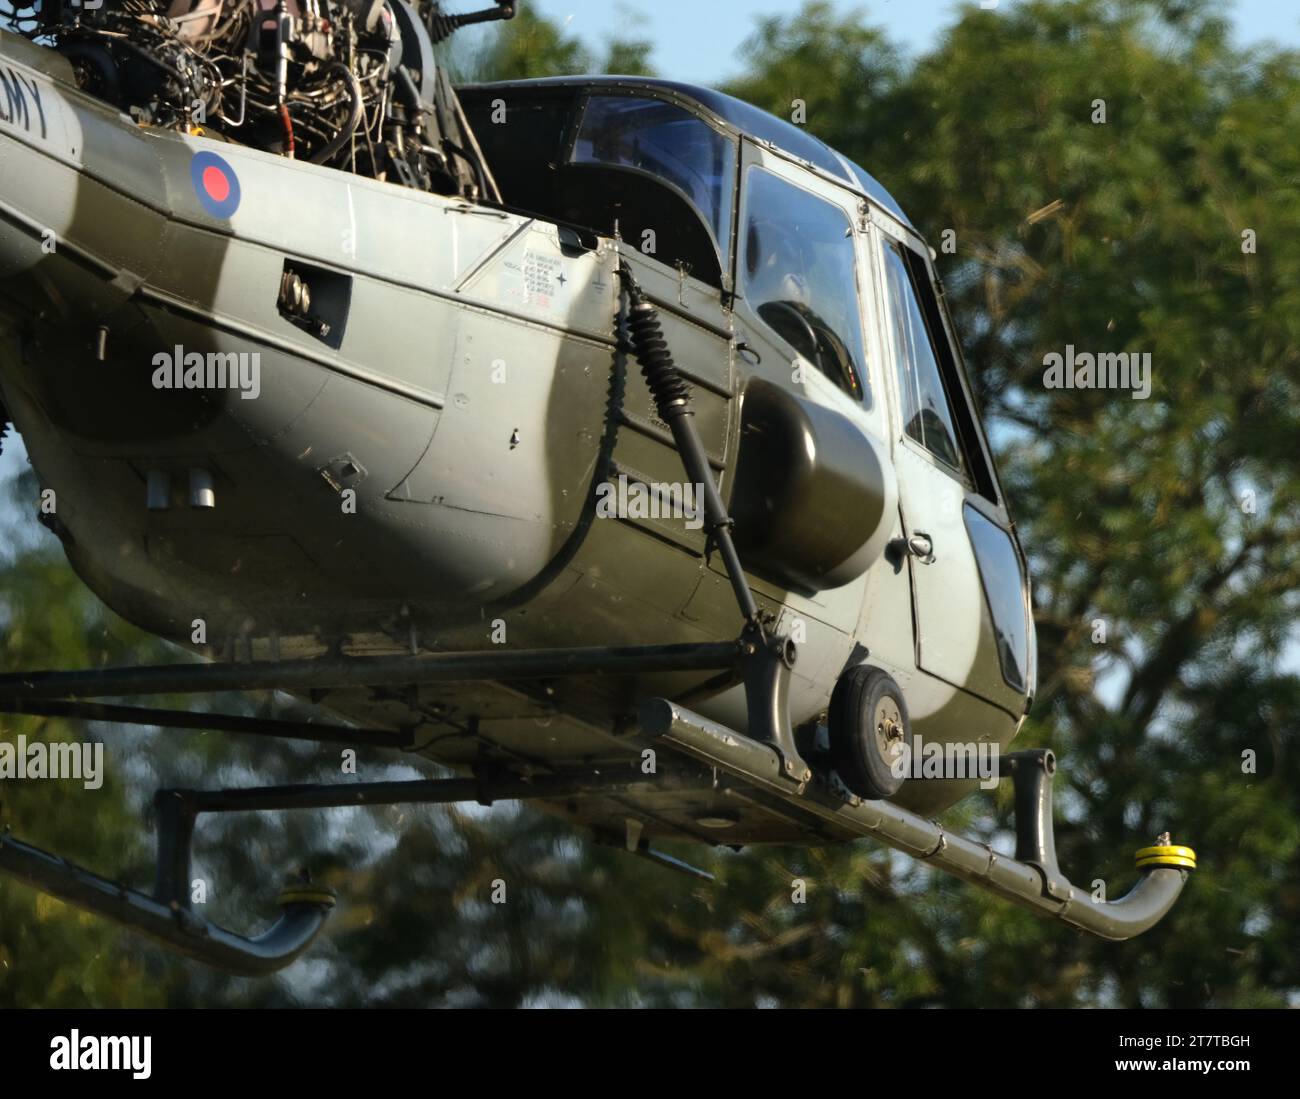 Der Westland Scout ist ein leichter Hubschrauber, der von Westland Helicopters entwickelt wurde Stockfoto